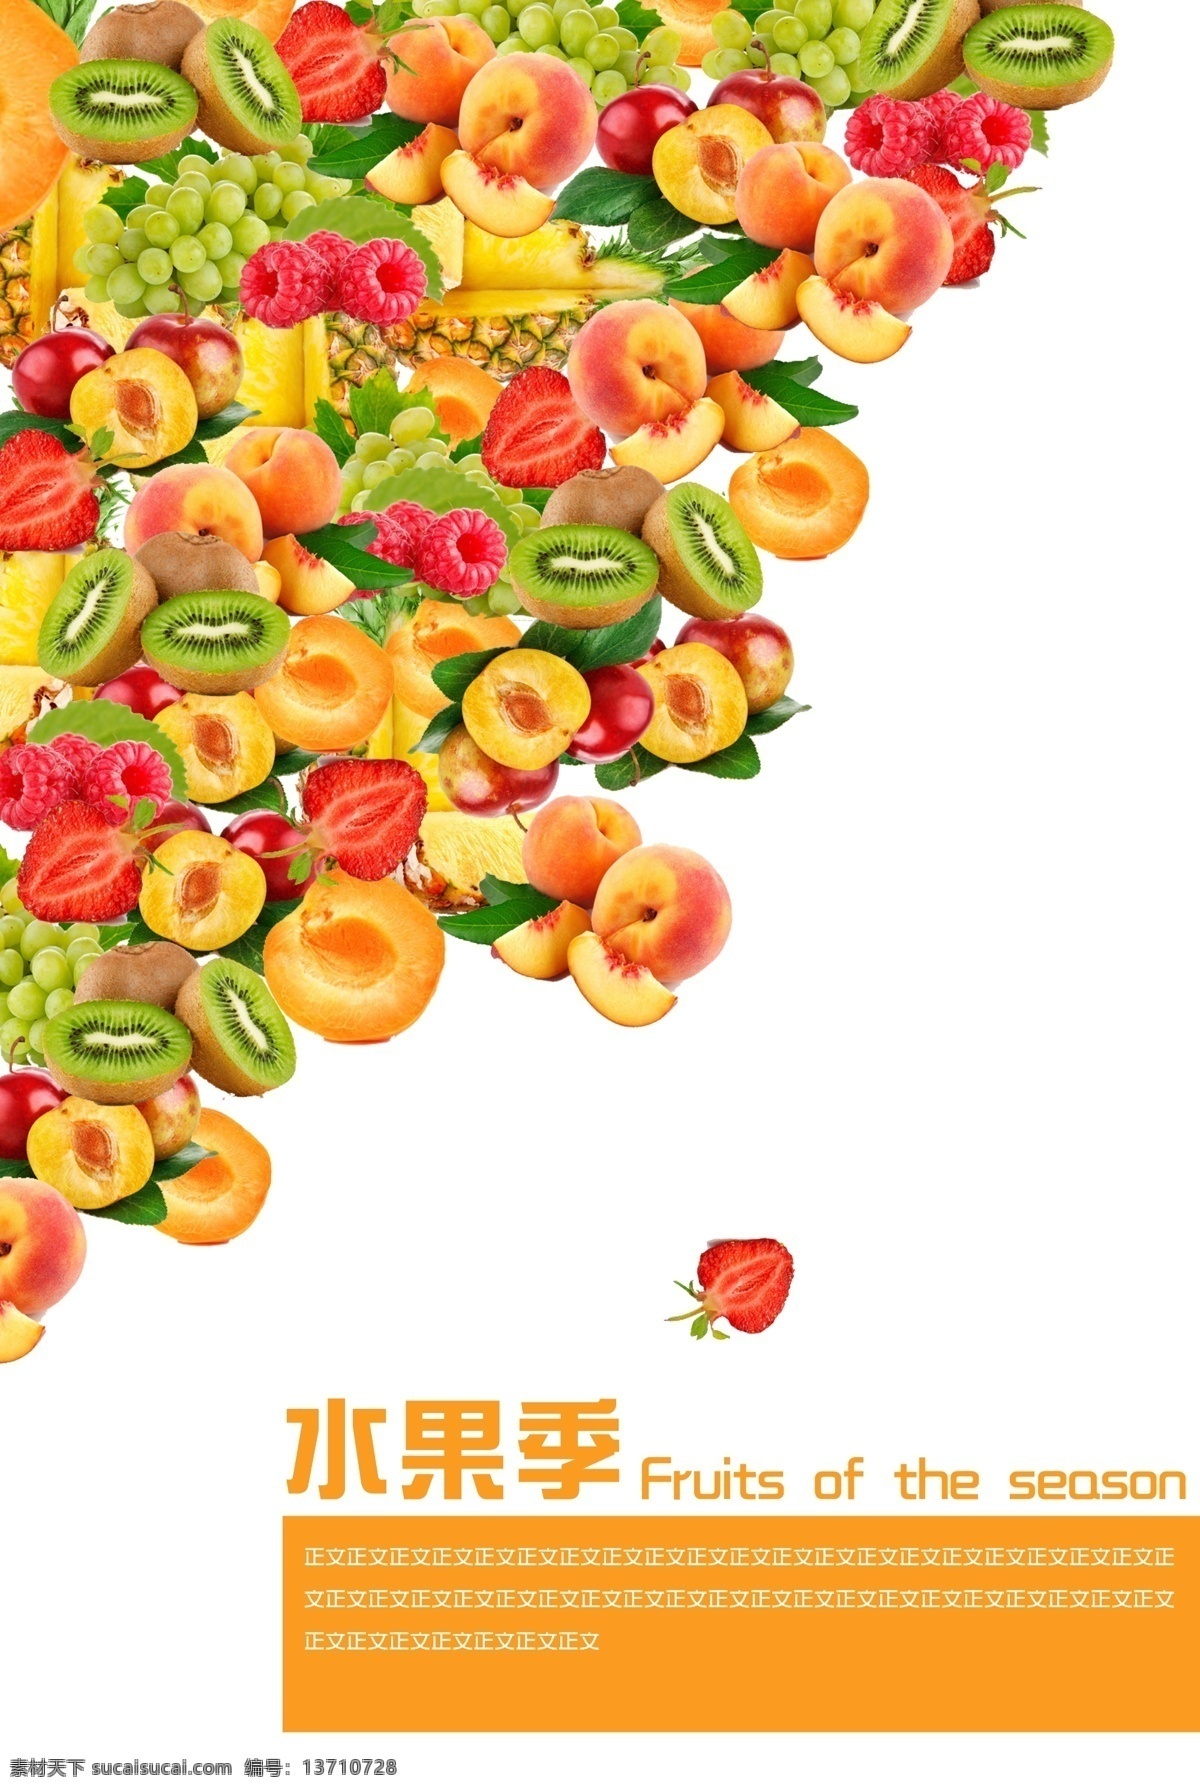 分层 版式设计 菠萝 草莓 橙色 封面 画册 黄桃 水果季 水果 桃子 猕猴桃 葡萄 模板 源文件 其他画册封面